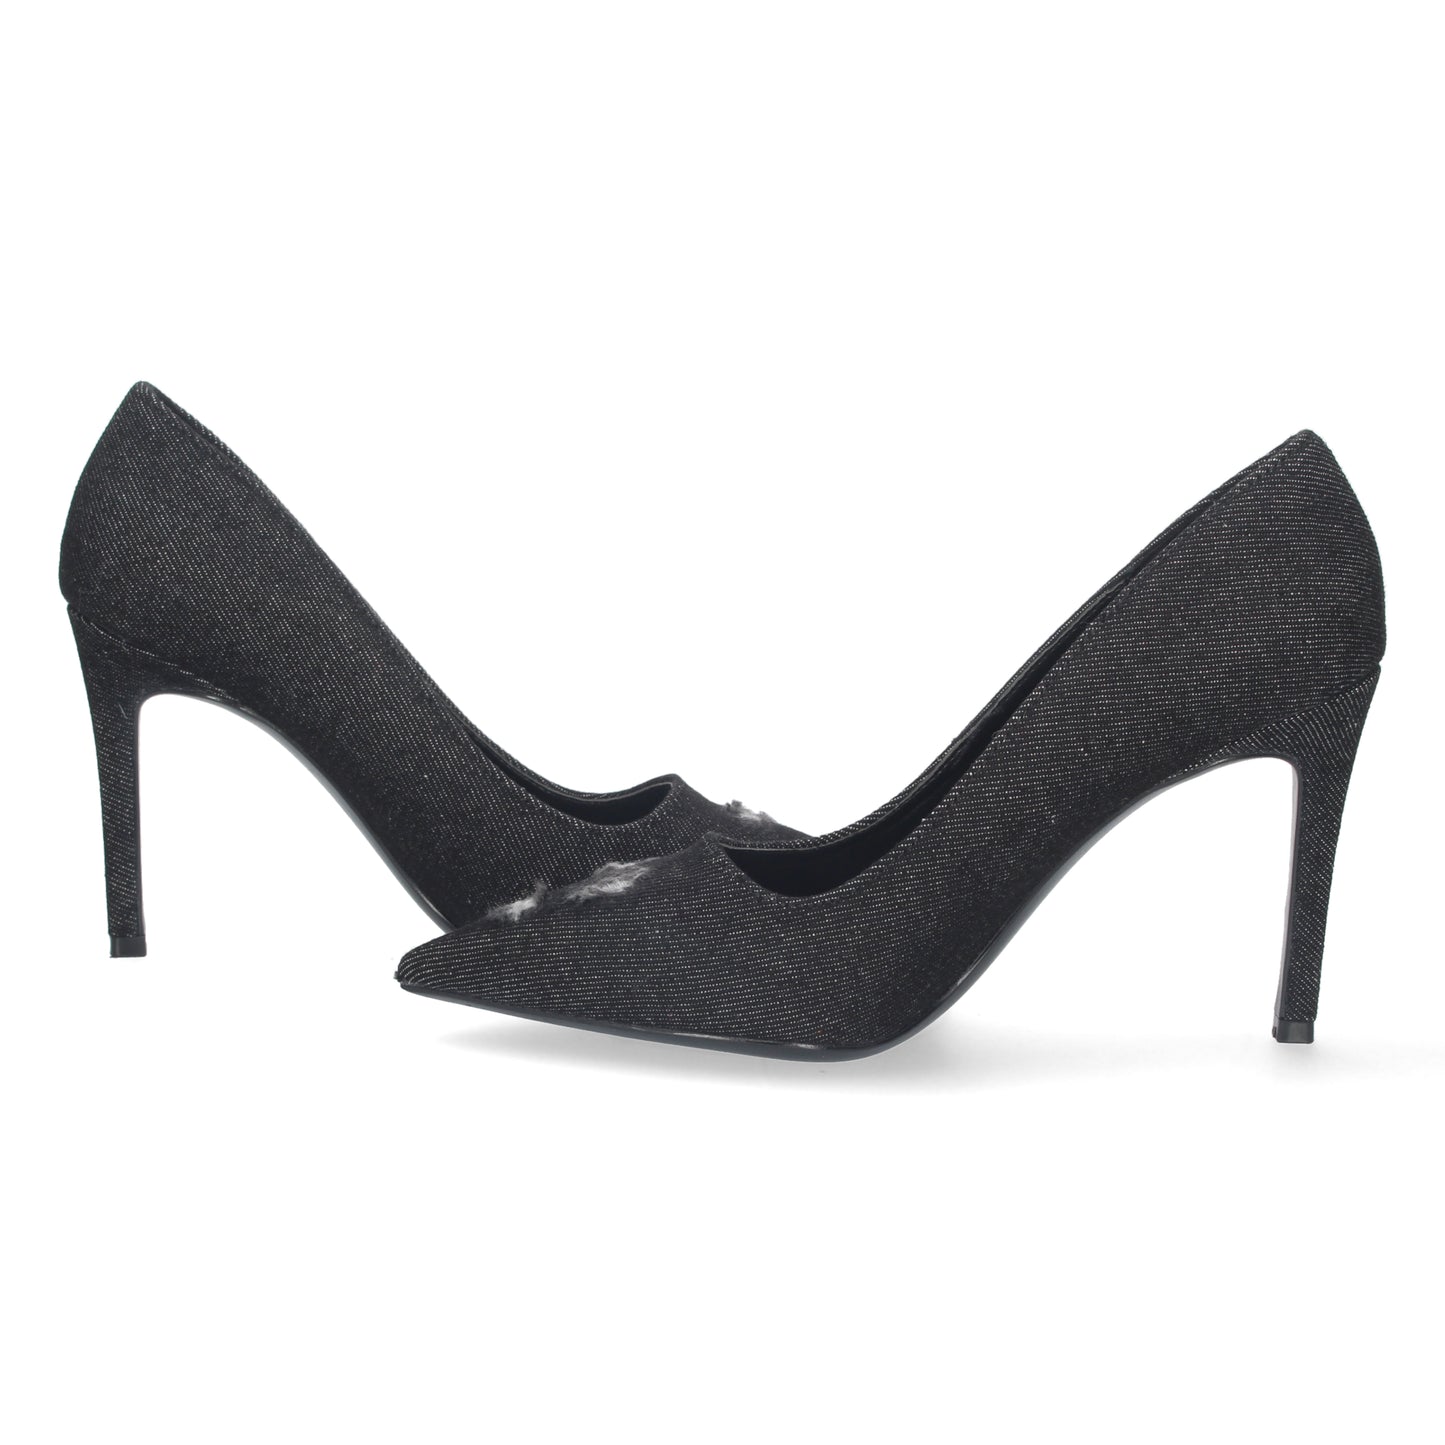 Zapato de Salon para Mujer  con Tacon  Comodo  de Punta Fina  Estampado Roto  sin Cierre  Ajustado al Pie